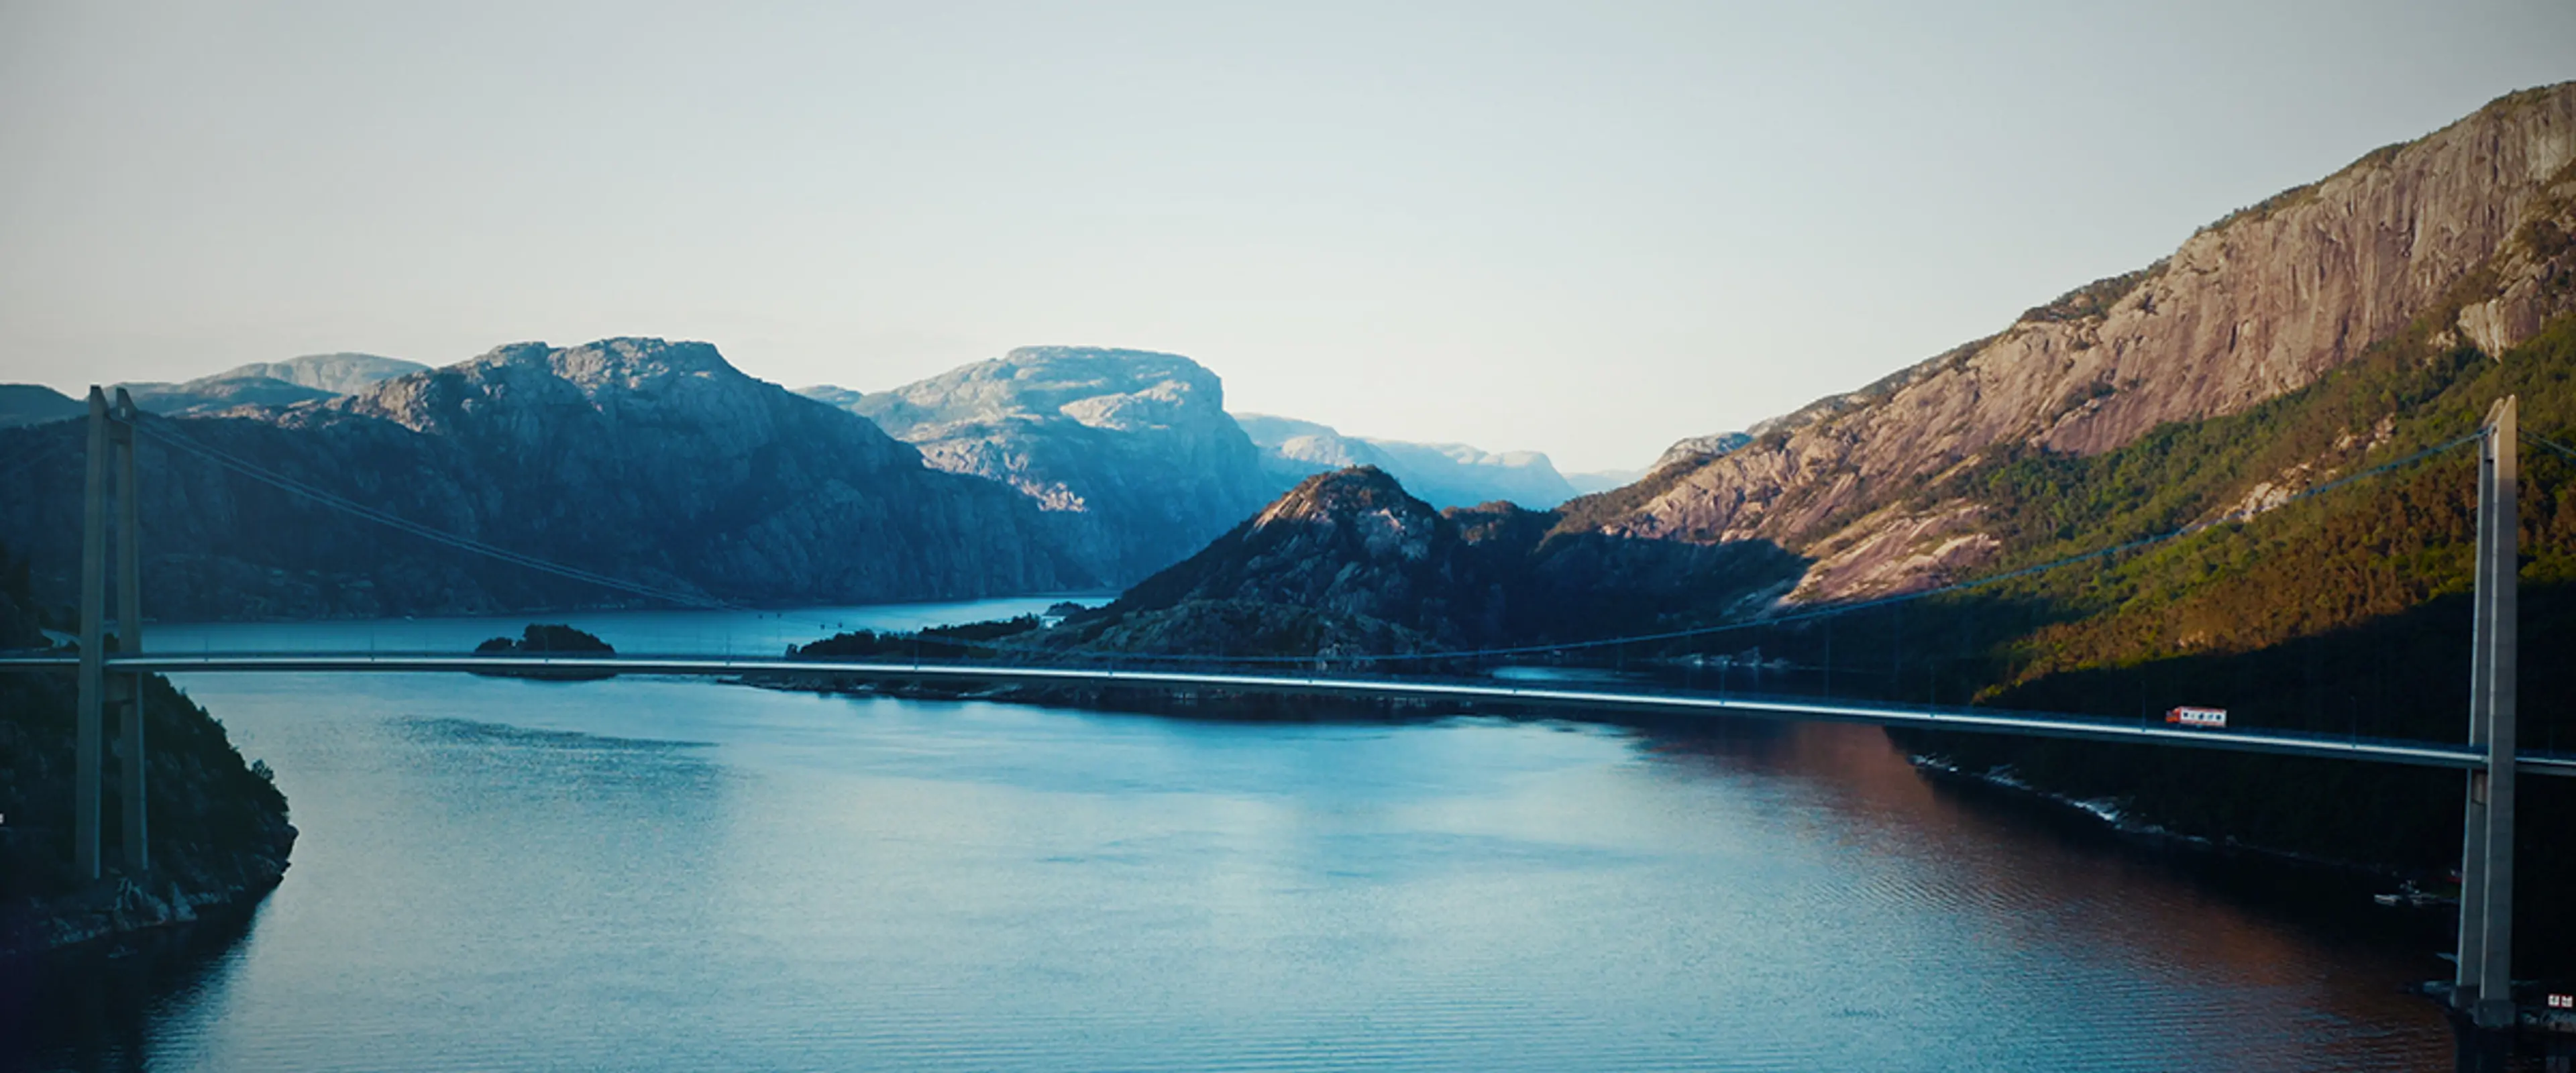 Bro over en fjord med fjell i bakgrunnen